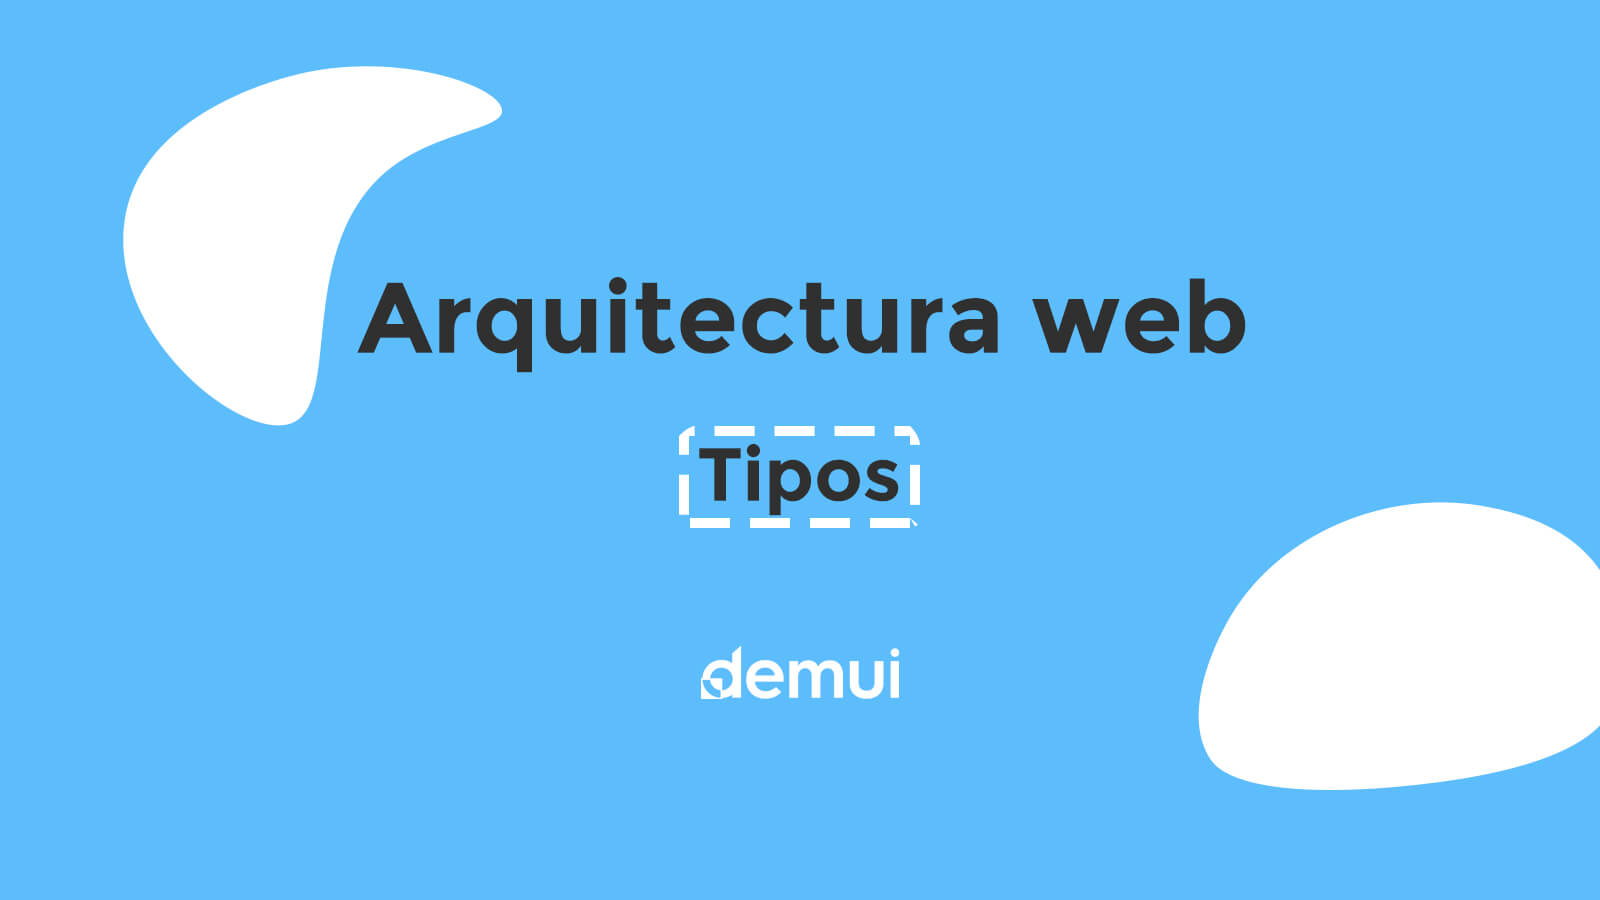 Arquitectura Web